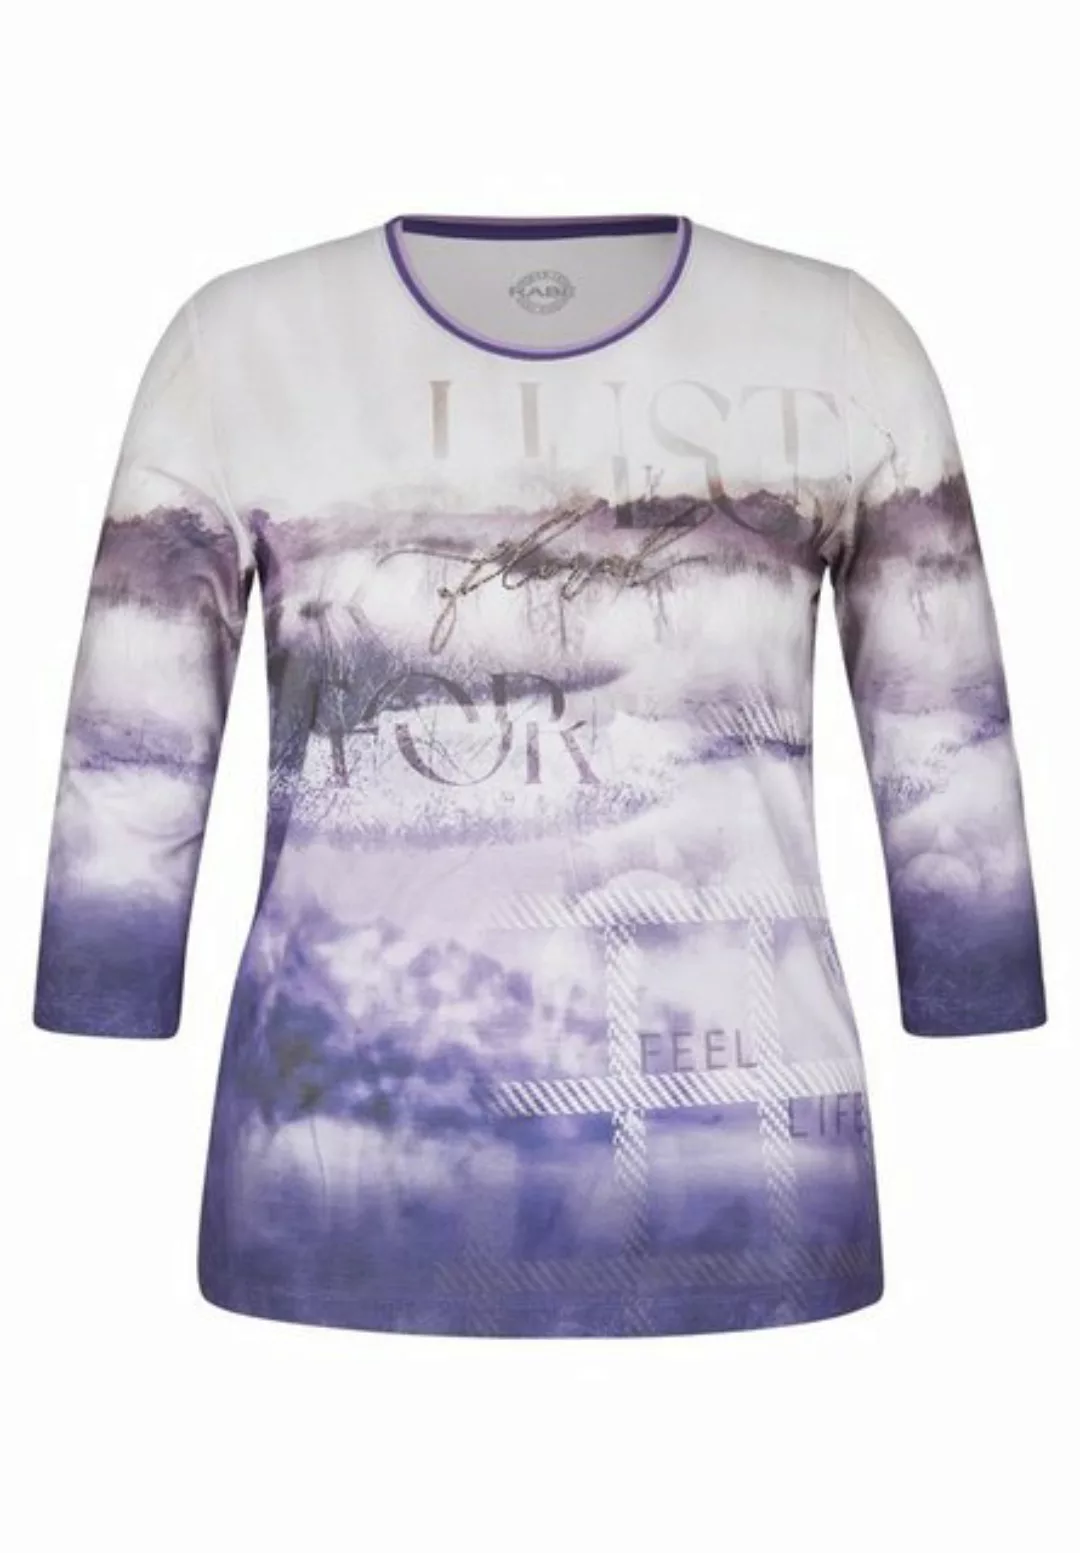 Rabe Shirtbluse T-Shirt Rundhals 3/4 Arm günstig online kaufen